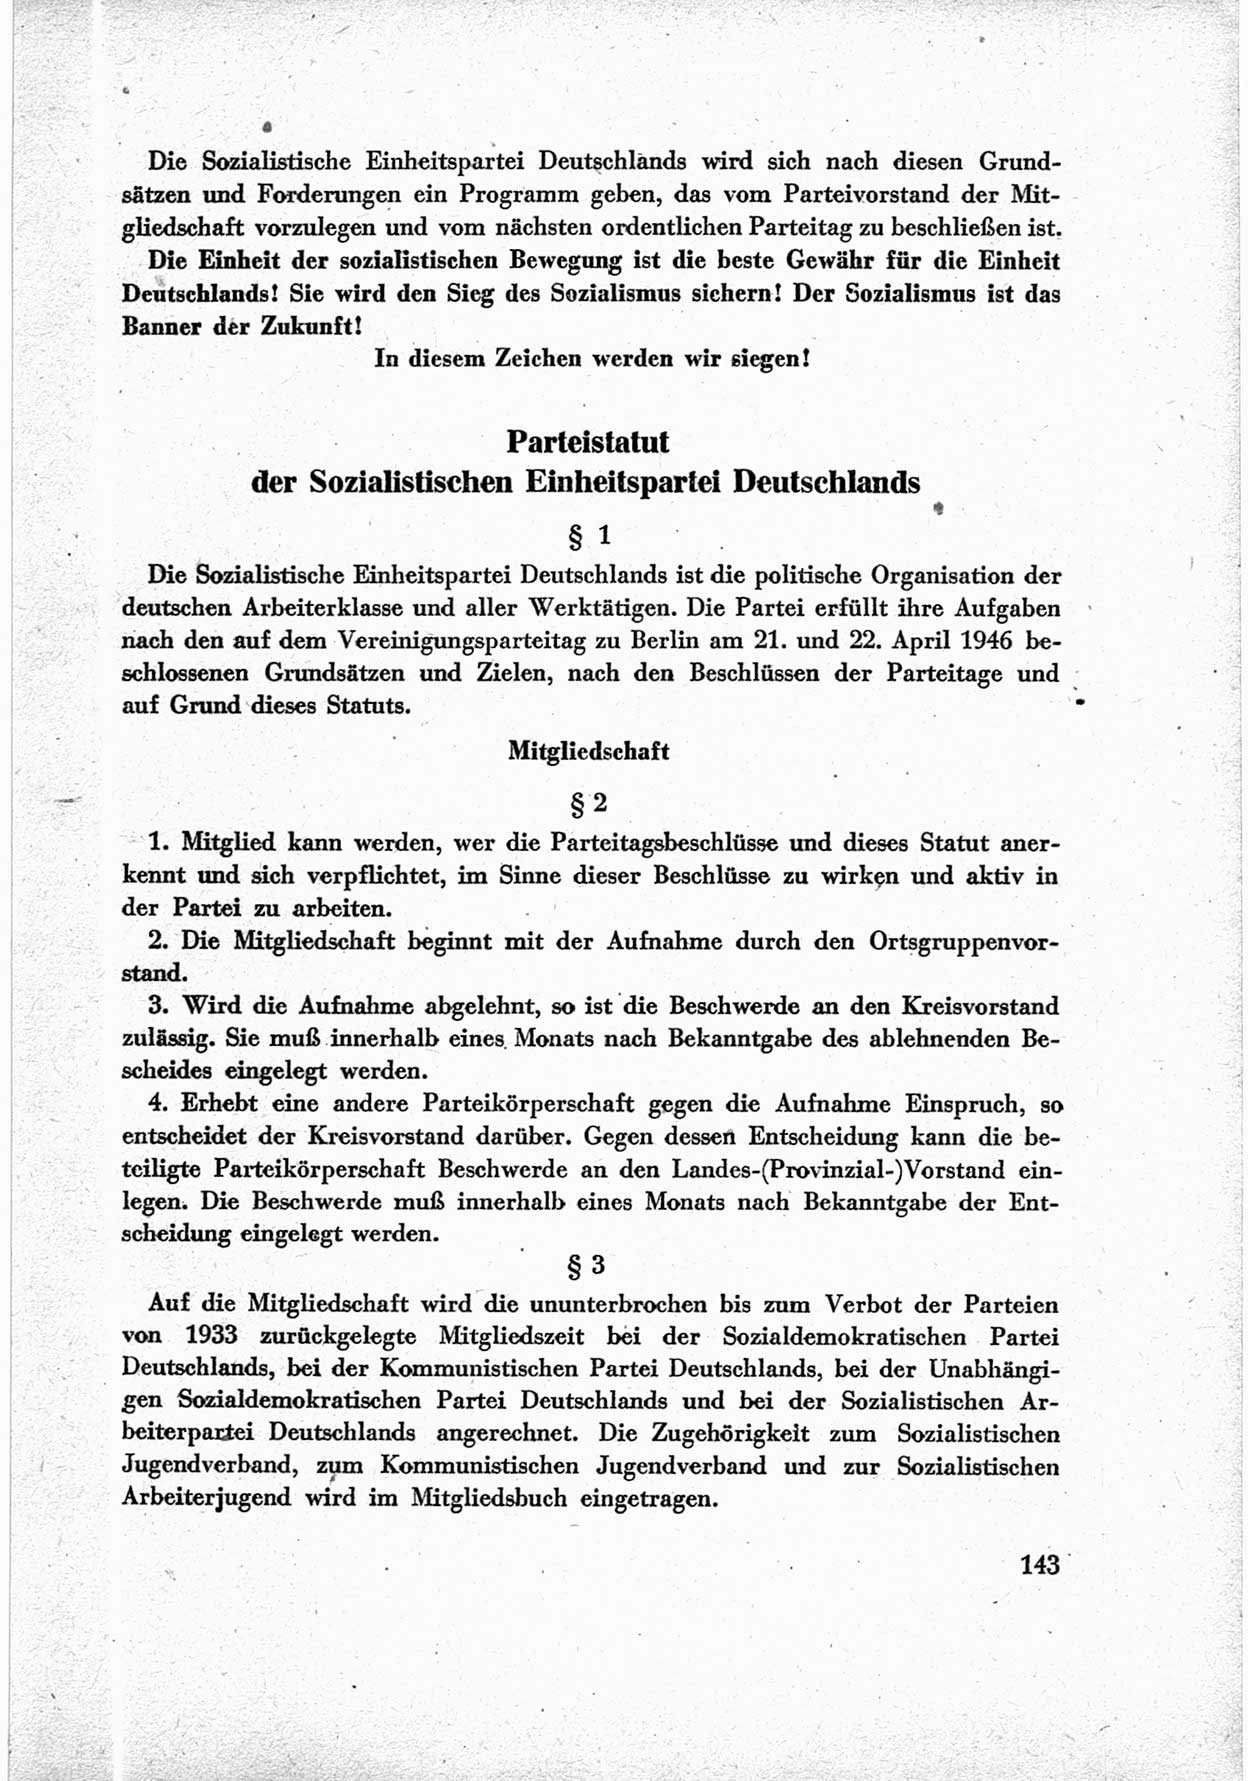 40. Parteitag der Sozialdemokratischen Partei Deutschlands (SPD) [Sowjetische Besatzungszone (SBZ) Deutschlands] am 19. und 20. April 1946 in Berlin, Seite 143 (40. PT SPD SBZ Dtl. 1946, S. 143)